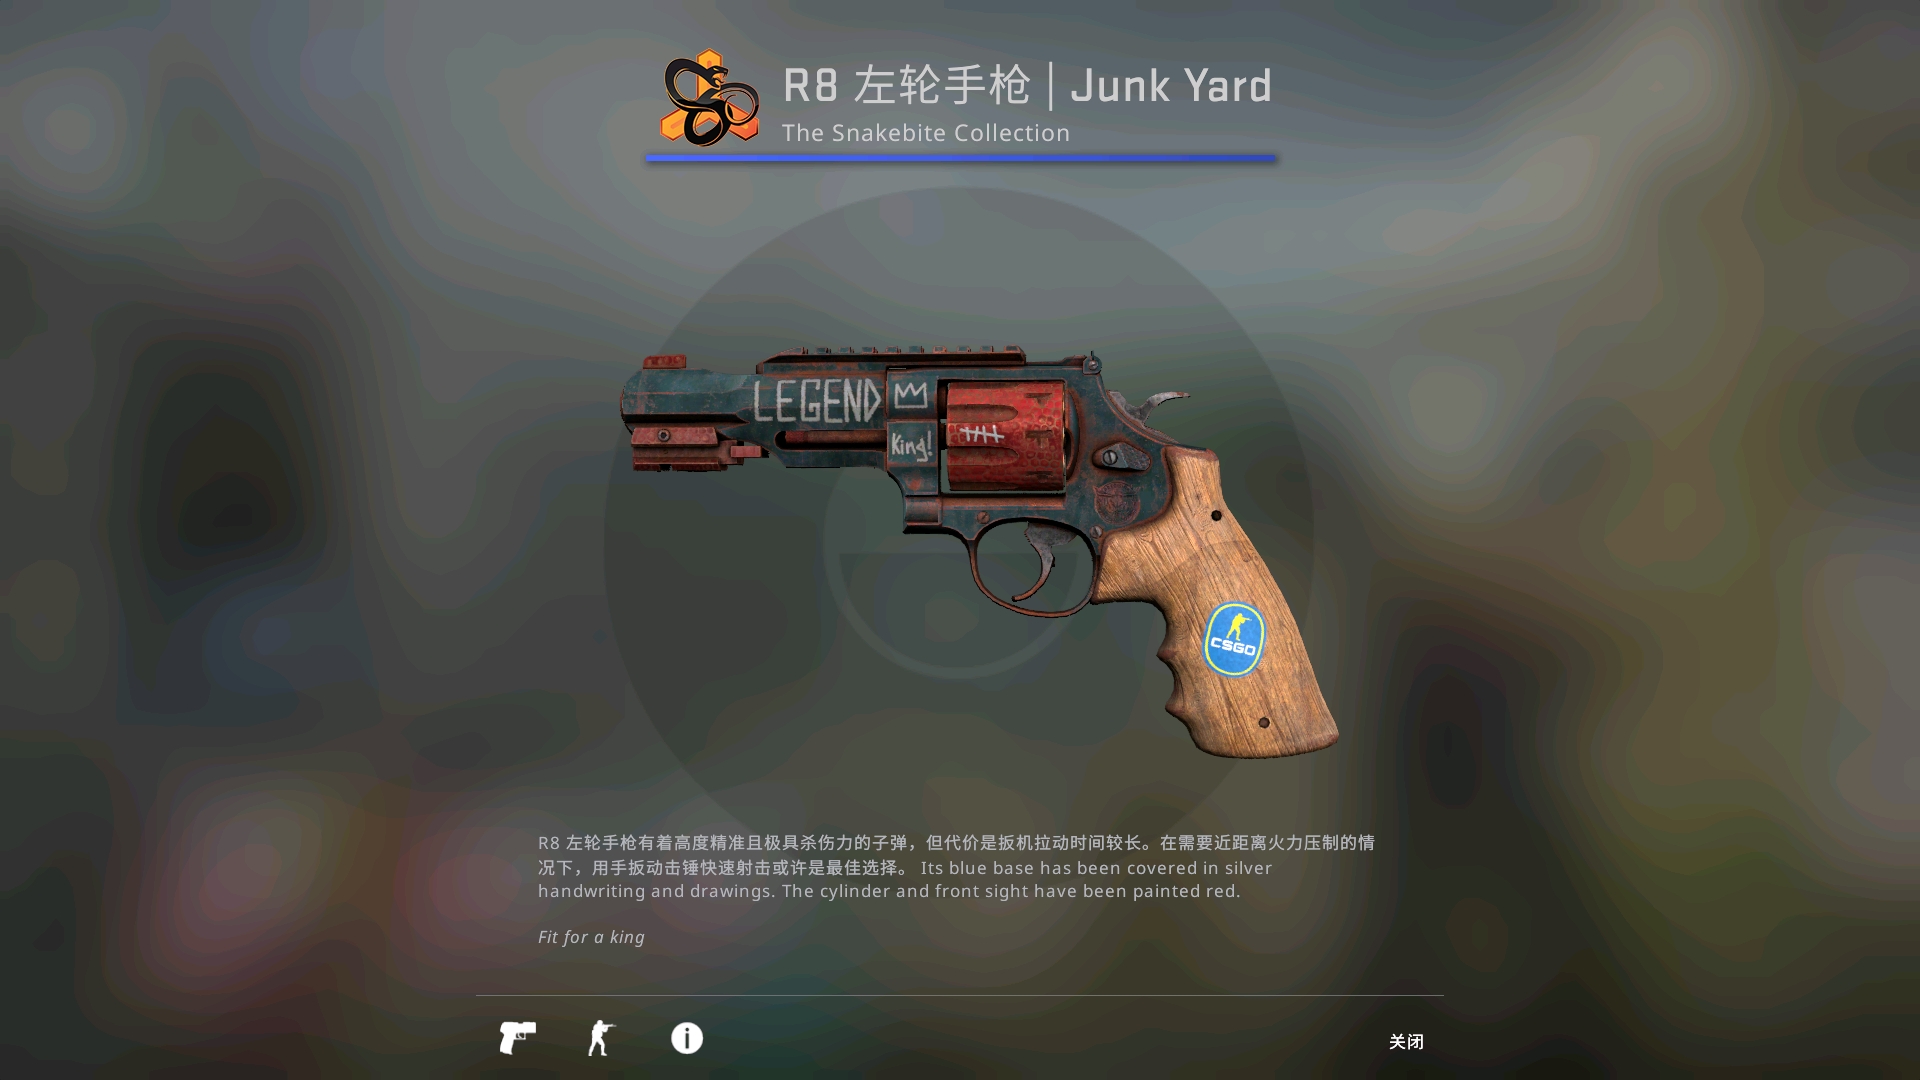 R8左轮手枪-Junk Yard(蓝色品质)